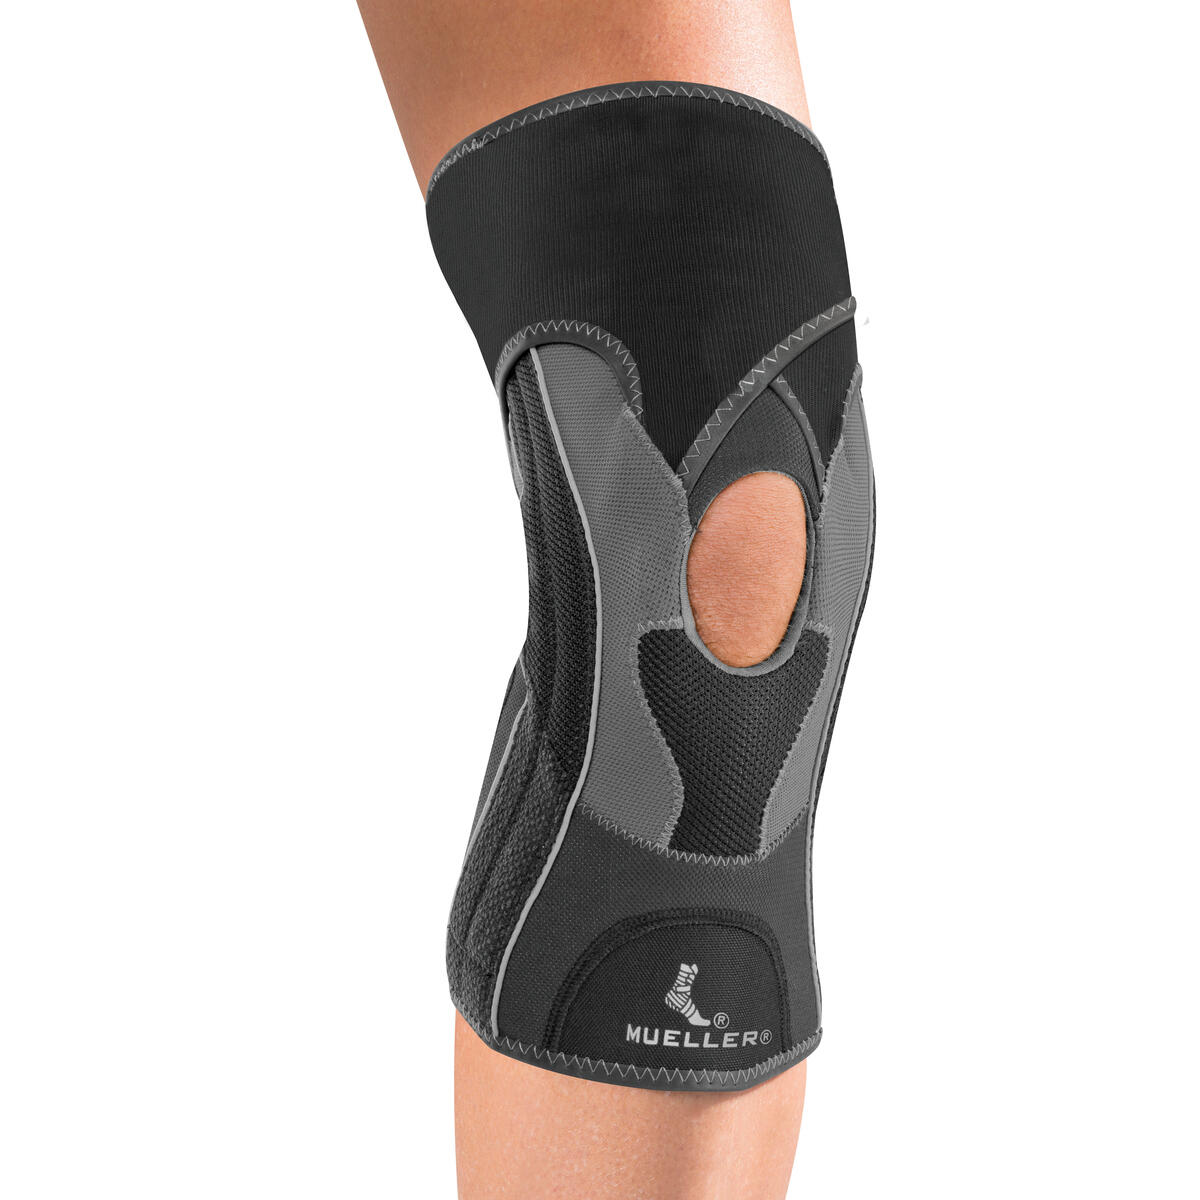 MUELLER Mueller HG80 Knee Brace Compression Support for Sport (M)